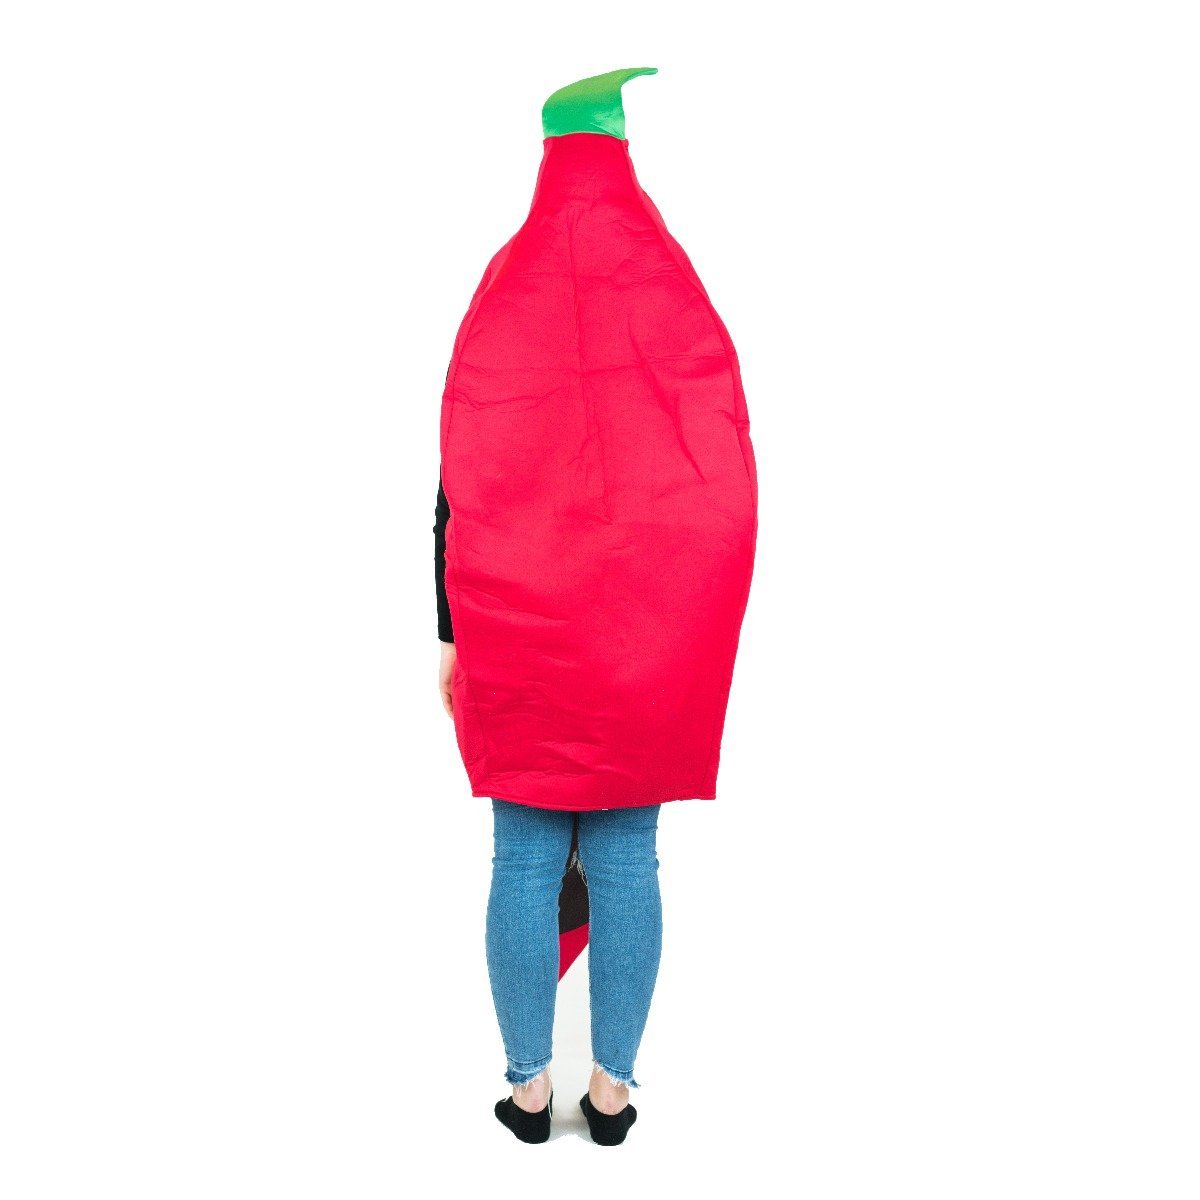 Chili Pepper Kostüm Cosplay Party Kleidung Chili Pepper Kleidung für